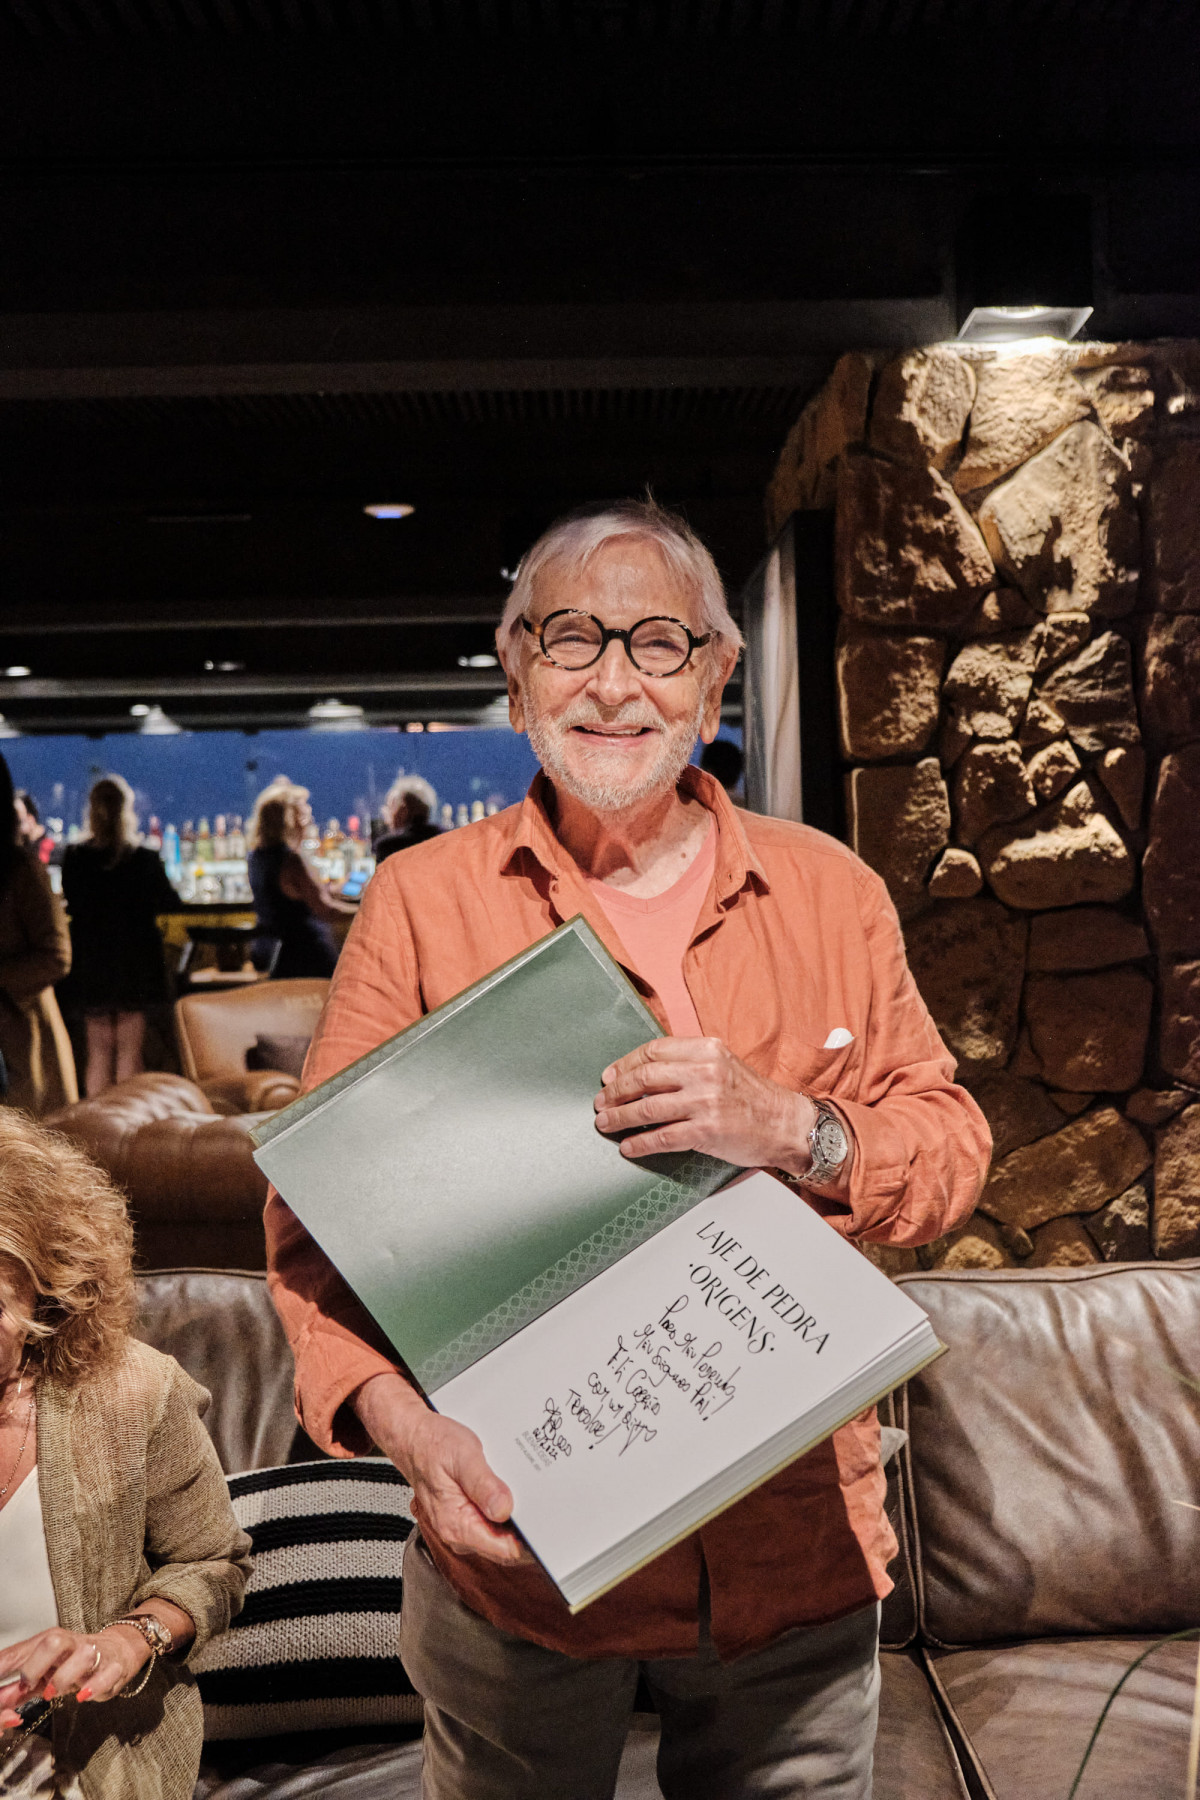 Fernando Ernesto Corrêa recebeu o livro autografado do Laje de Pedra, que conta a bela trajetória do mais tradicional hotel gaúcho